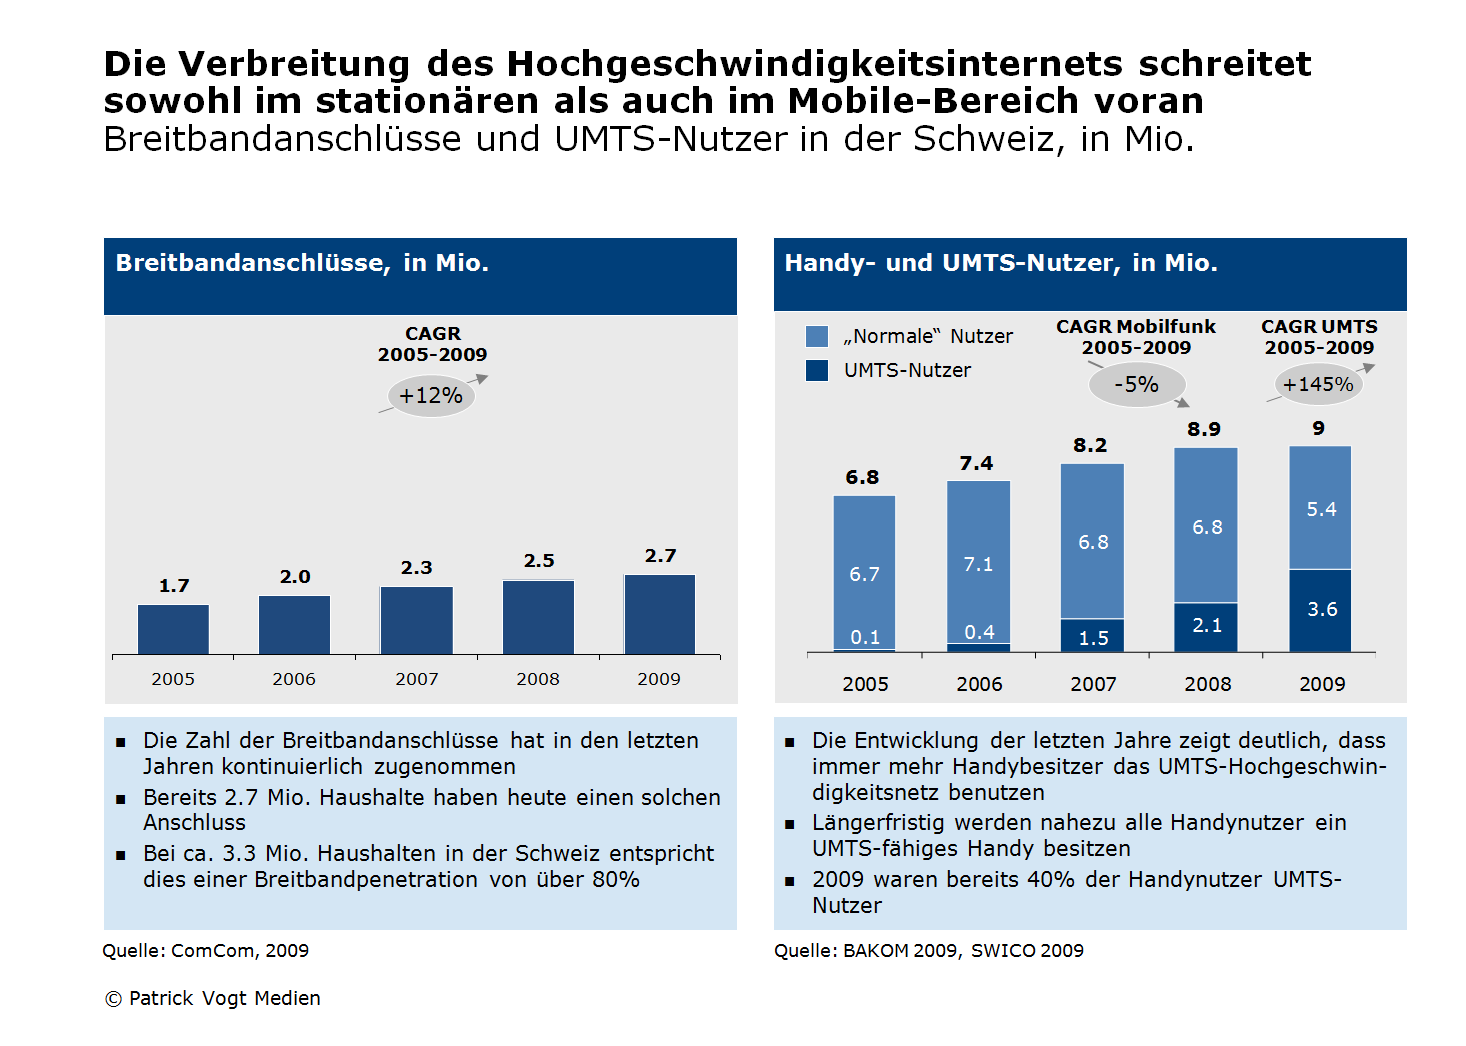 2.1 Diffusion der Mobile-Internet-Technologie 2.1.1 Breitbandanschlüsse und UMTS-Nutzer Die Nutzung des Hochgeschwindigkeitsinternets entwickelte sich in der Schweiz in den letzten Jahren stark: